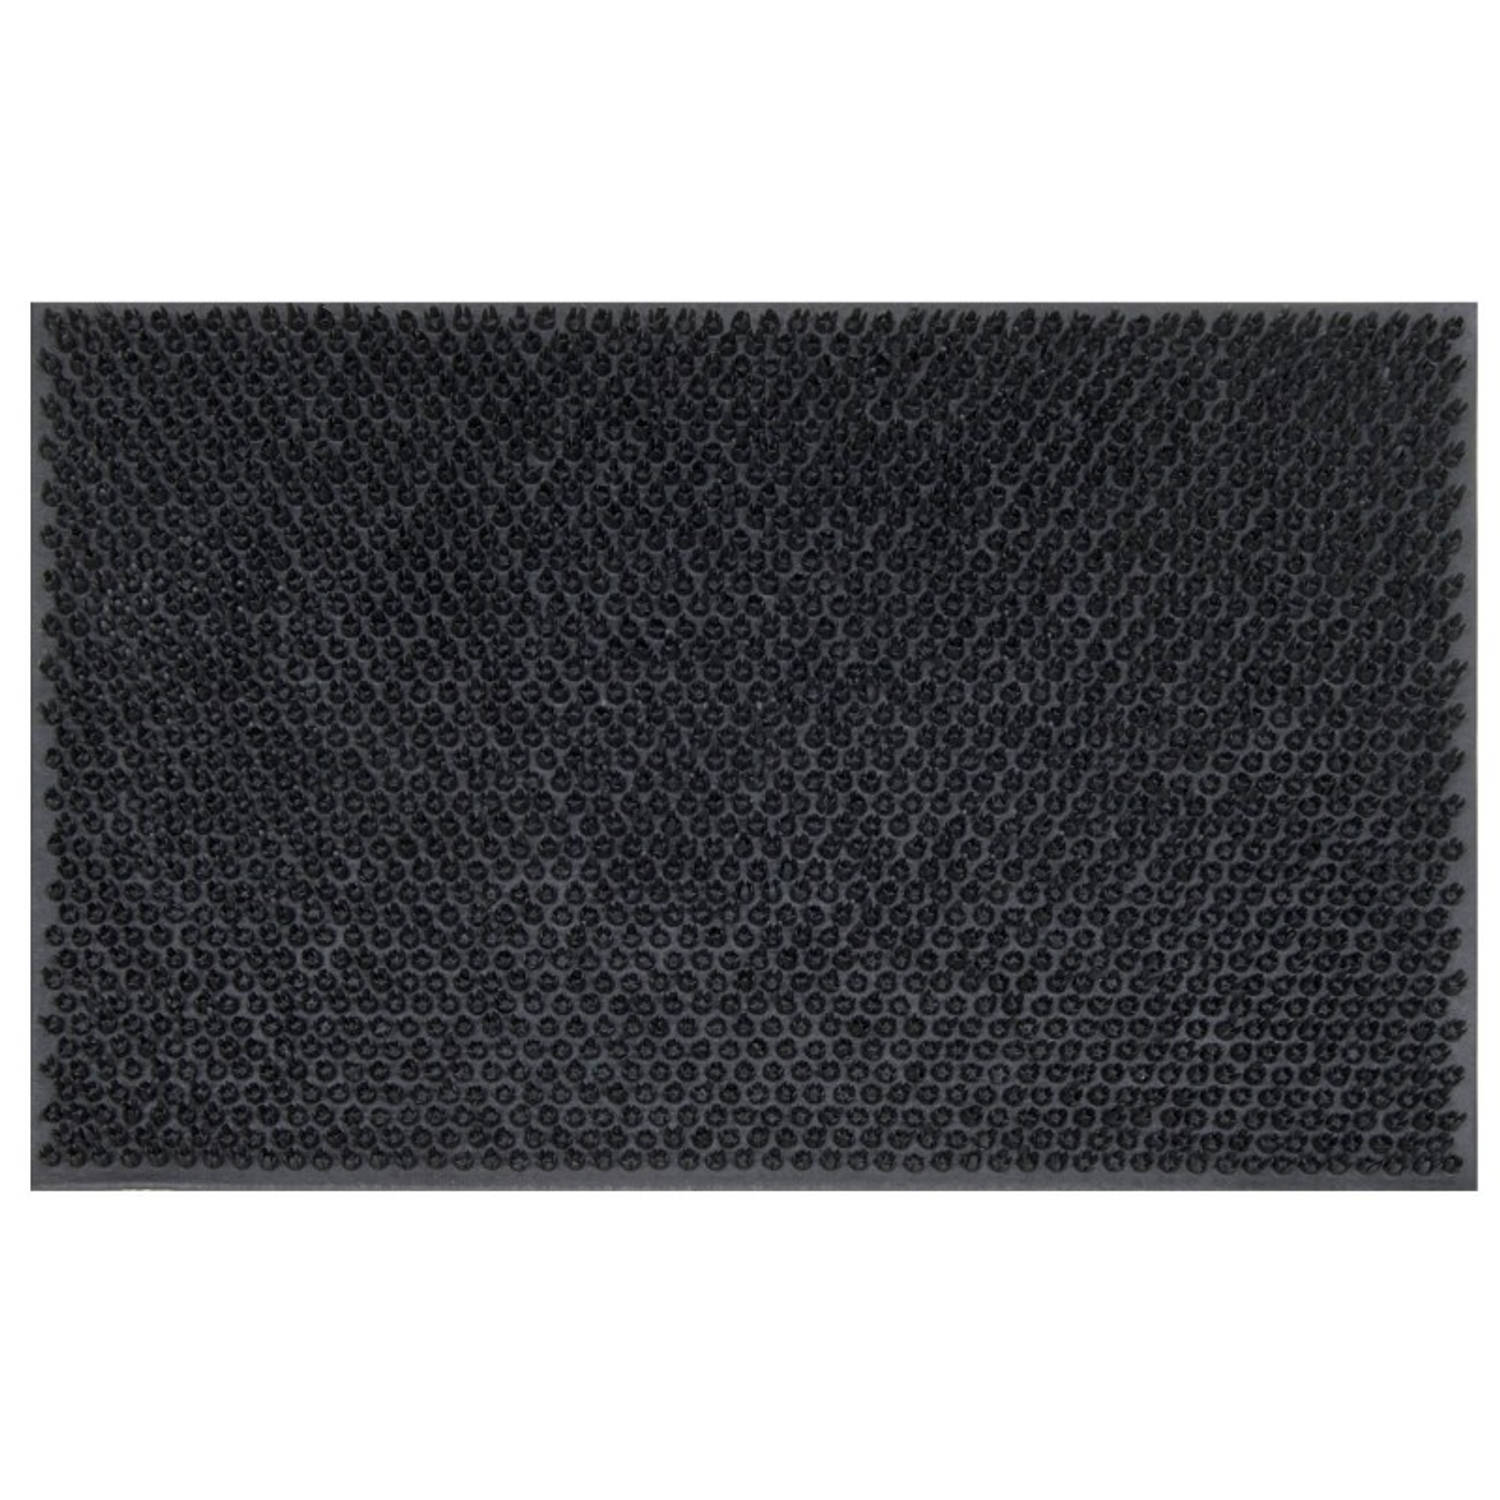 Tragar deurmat van volledig rubber met antislip - Voor binnen en buiten - Schoonloopmat - 40 x 60 cm zwart